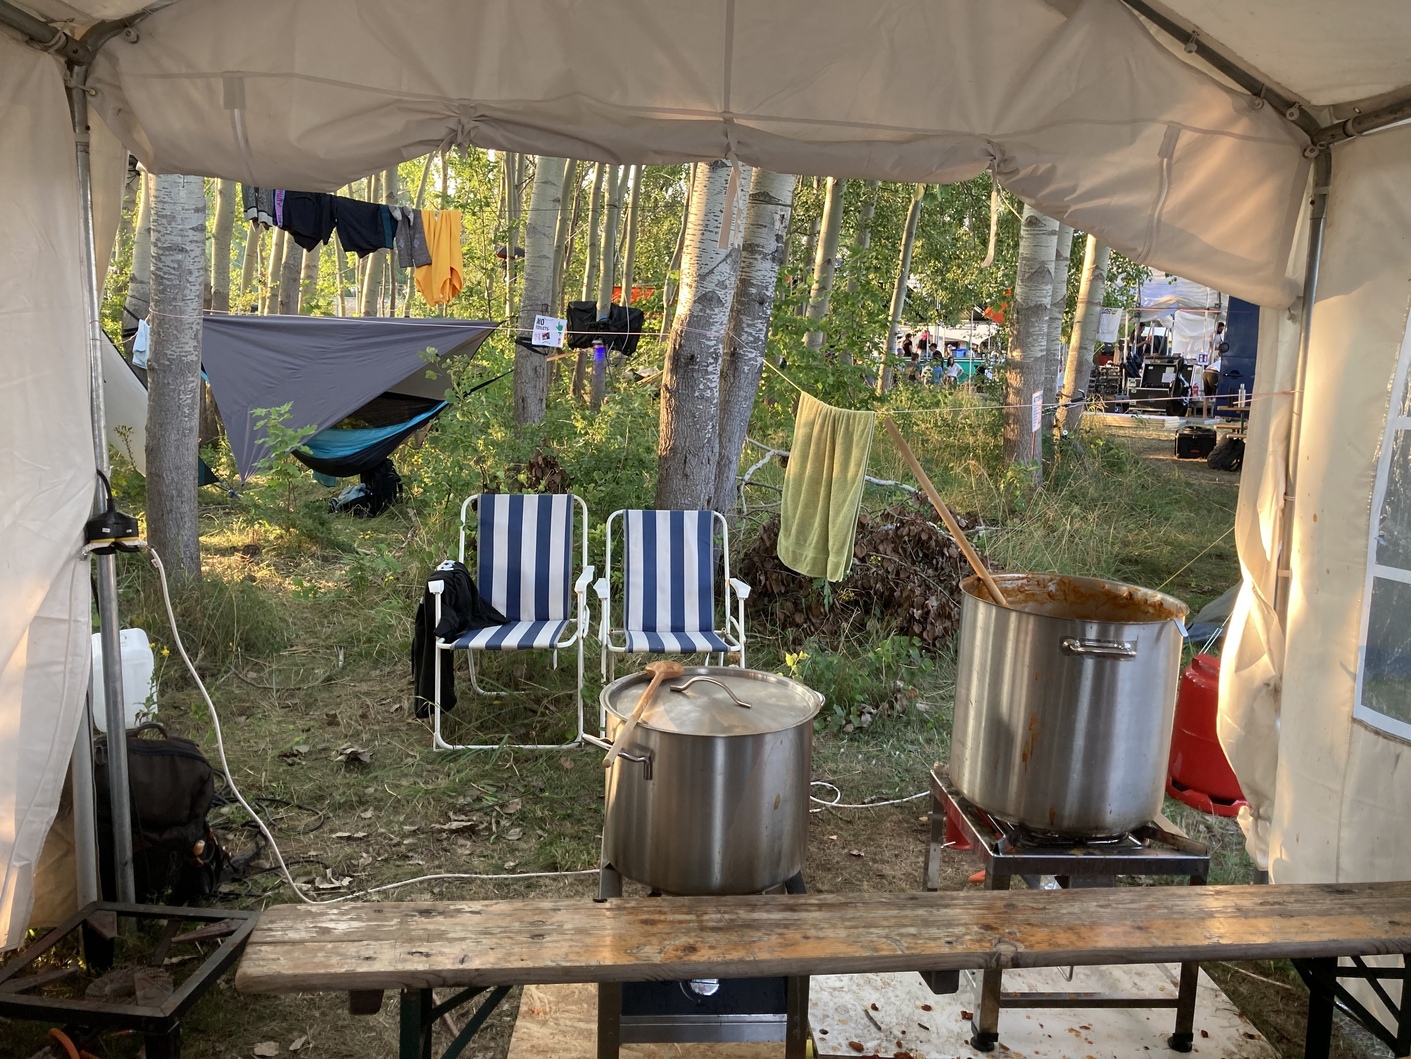 Chaos Kombüsen Zelt mit vielen Bierbänken und Kochern